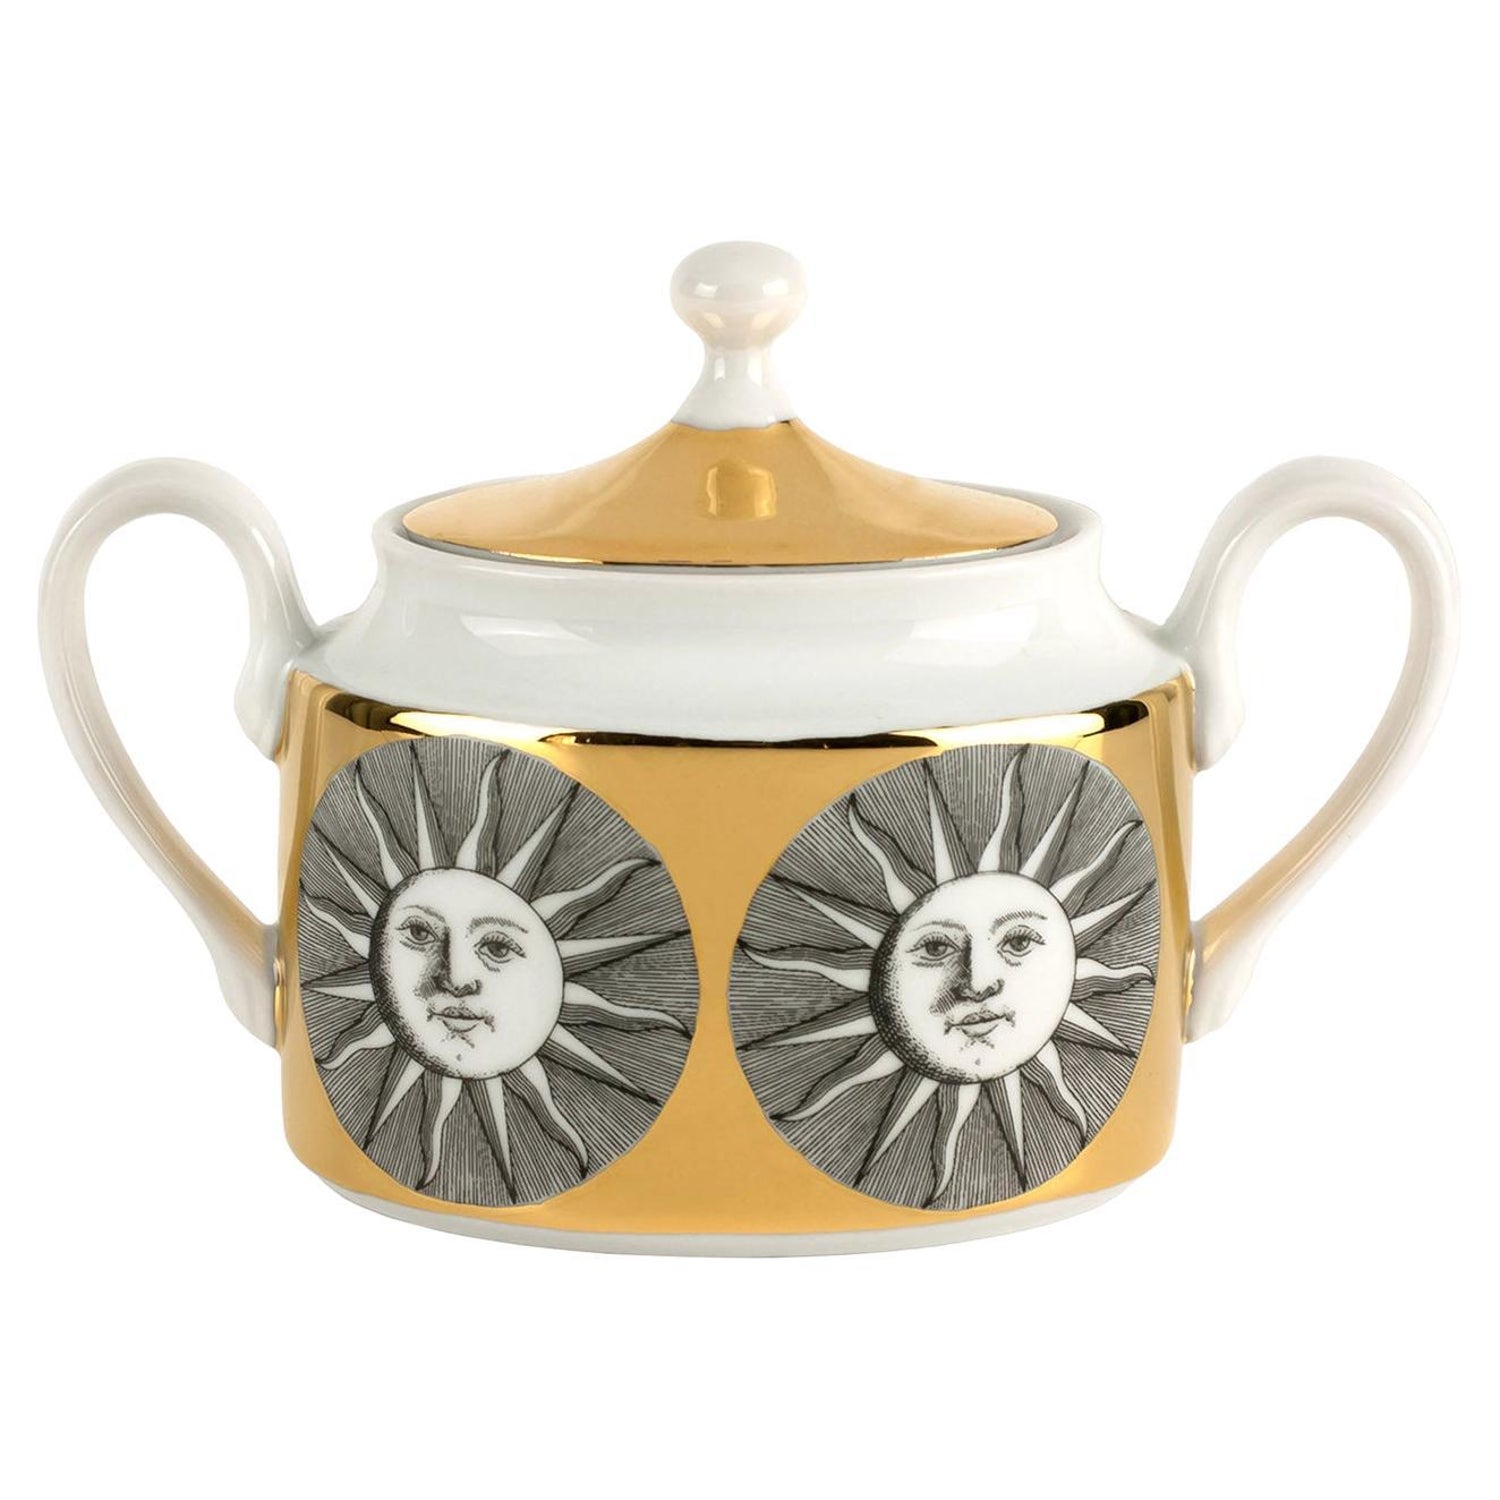 Set teiera e tazze da tè in stile nordico, set da tè in porcellana con base  in legno 1 teiera con 4 tazze Teiera moderna, set tazze da tè -  Italia